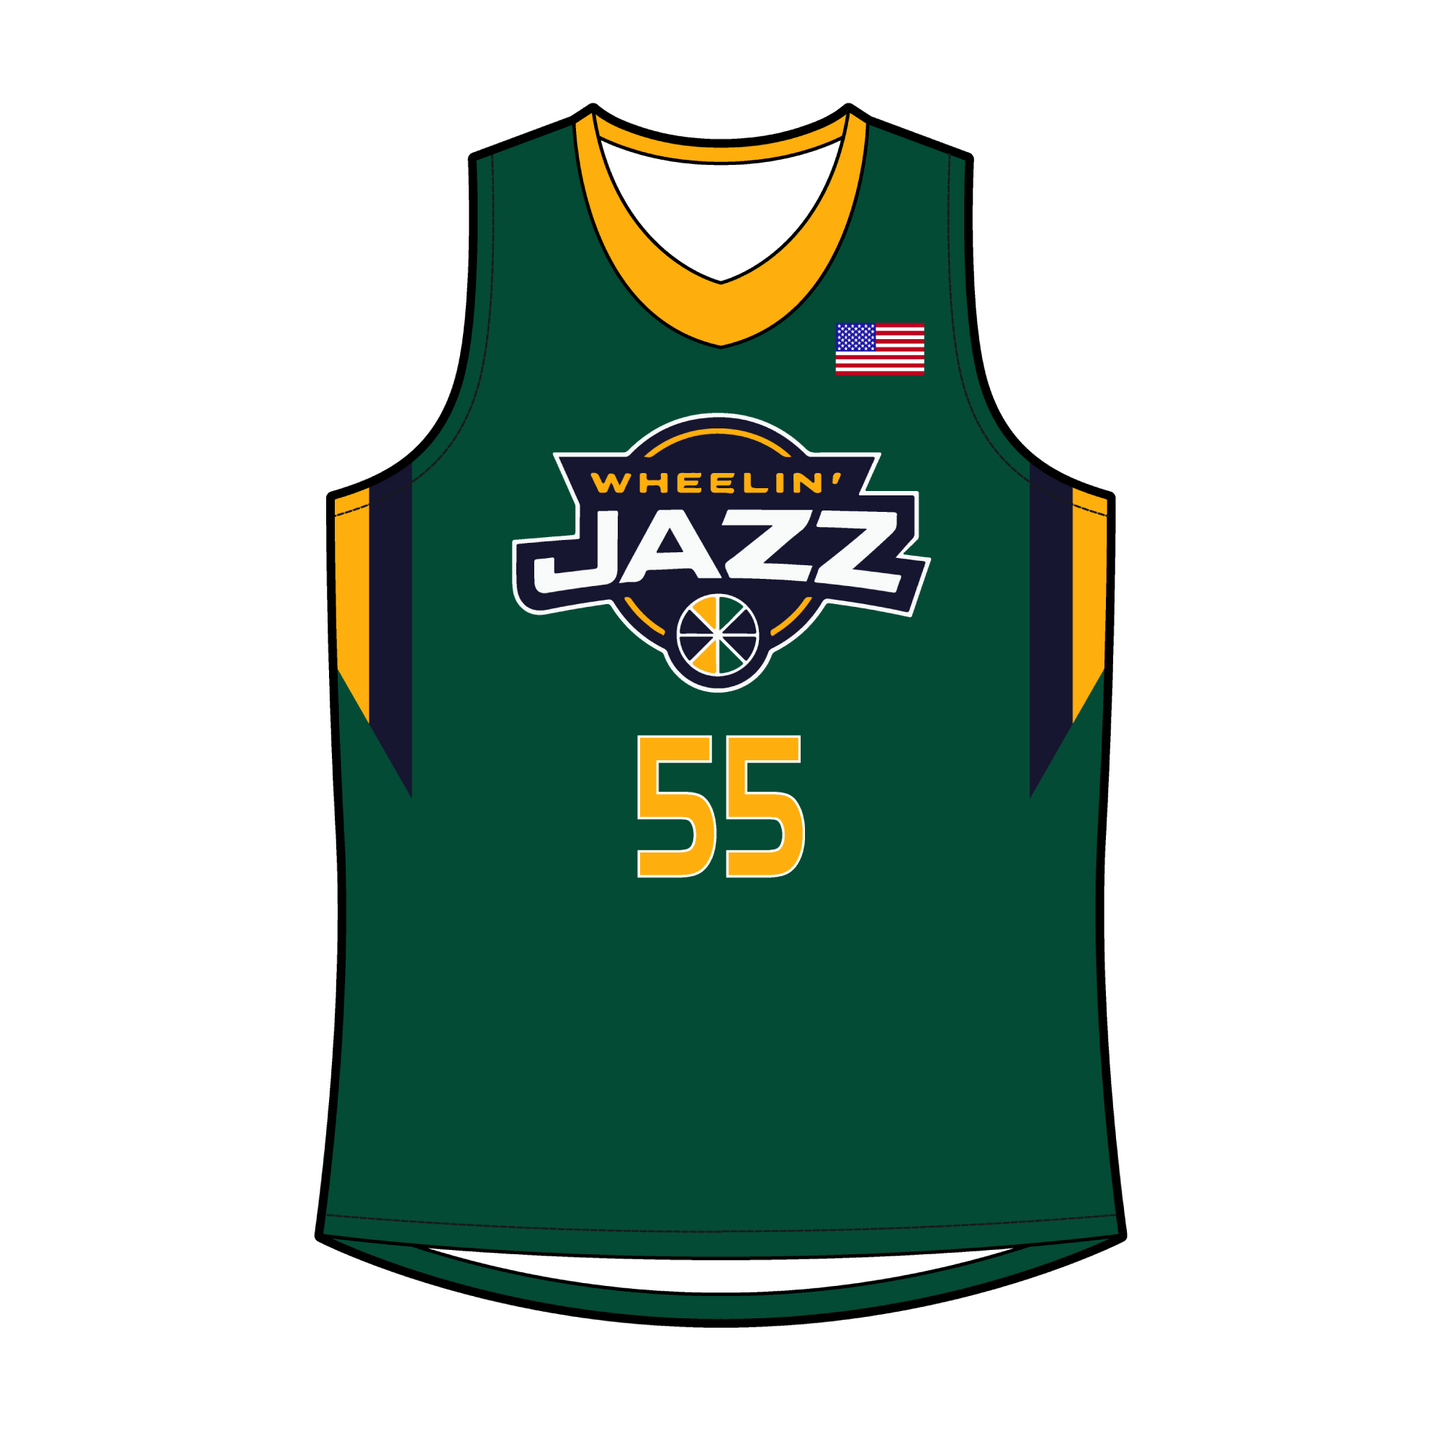 Official Wheelin' Jazz Home Game Basketball Jersey